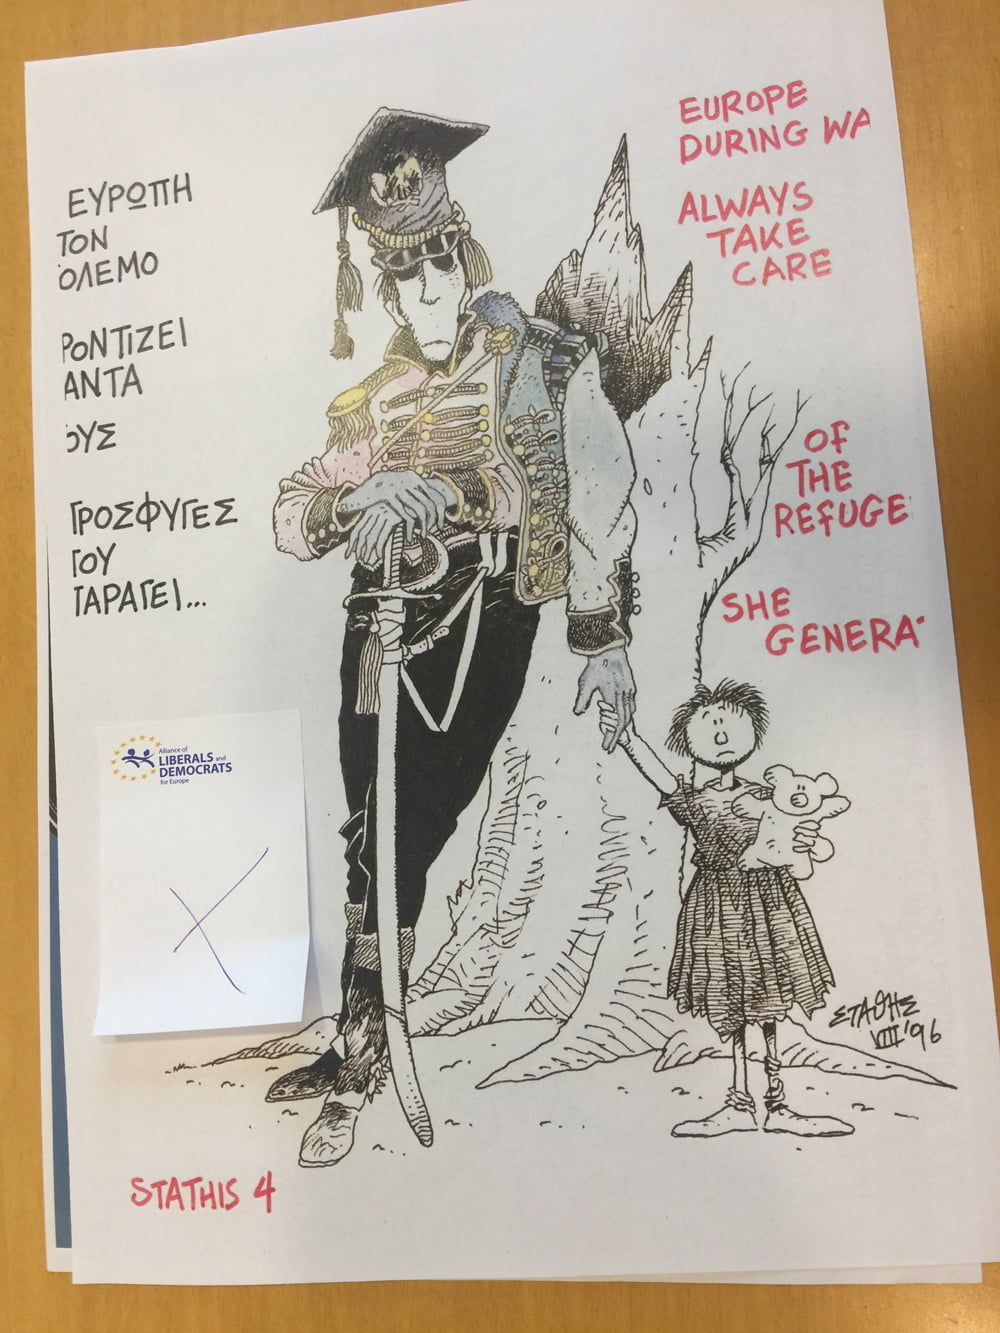 El Parlamento Europeo censura una exposición de viñetas políticas